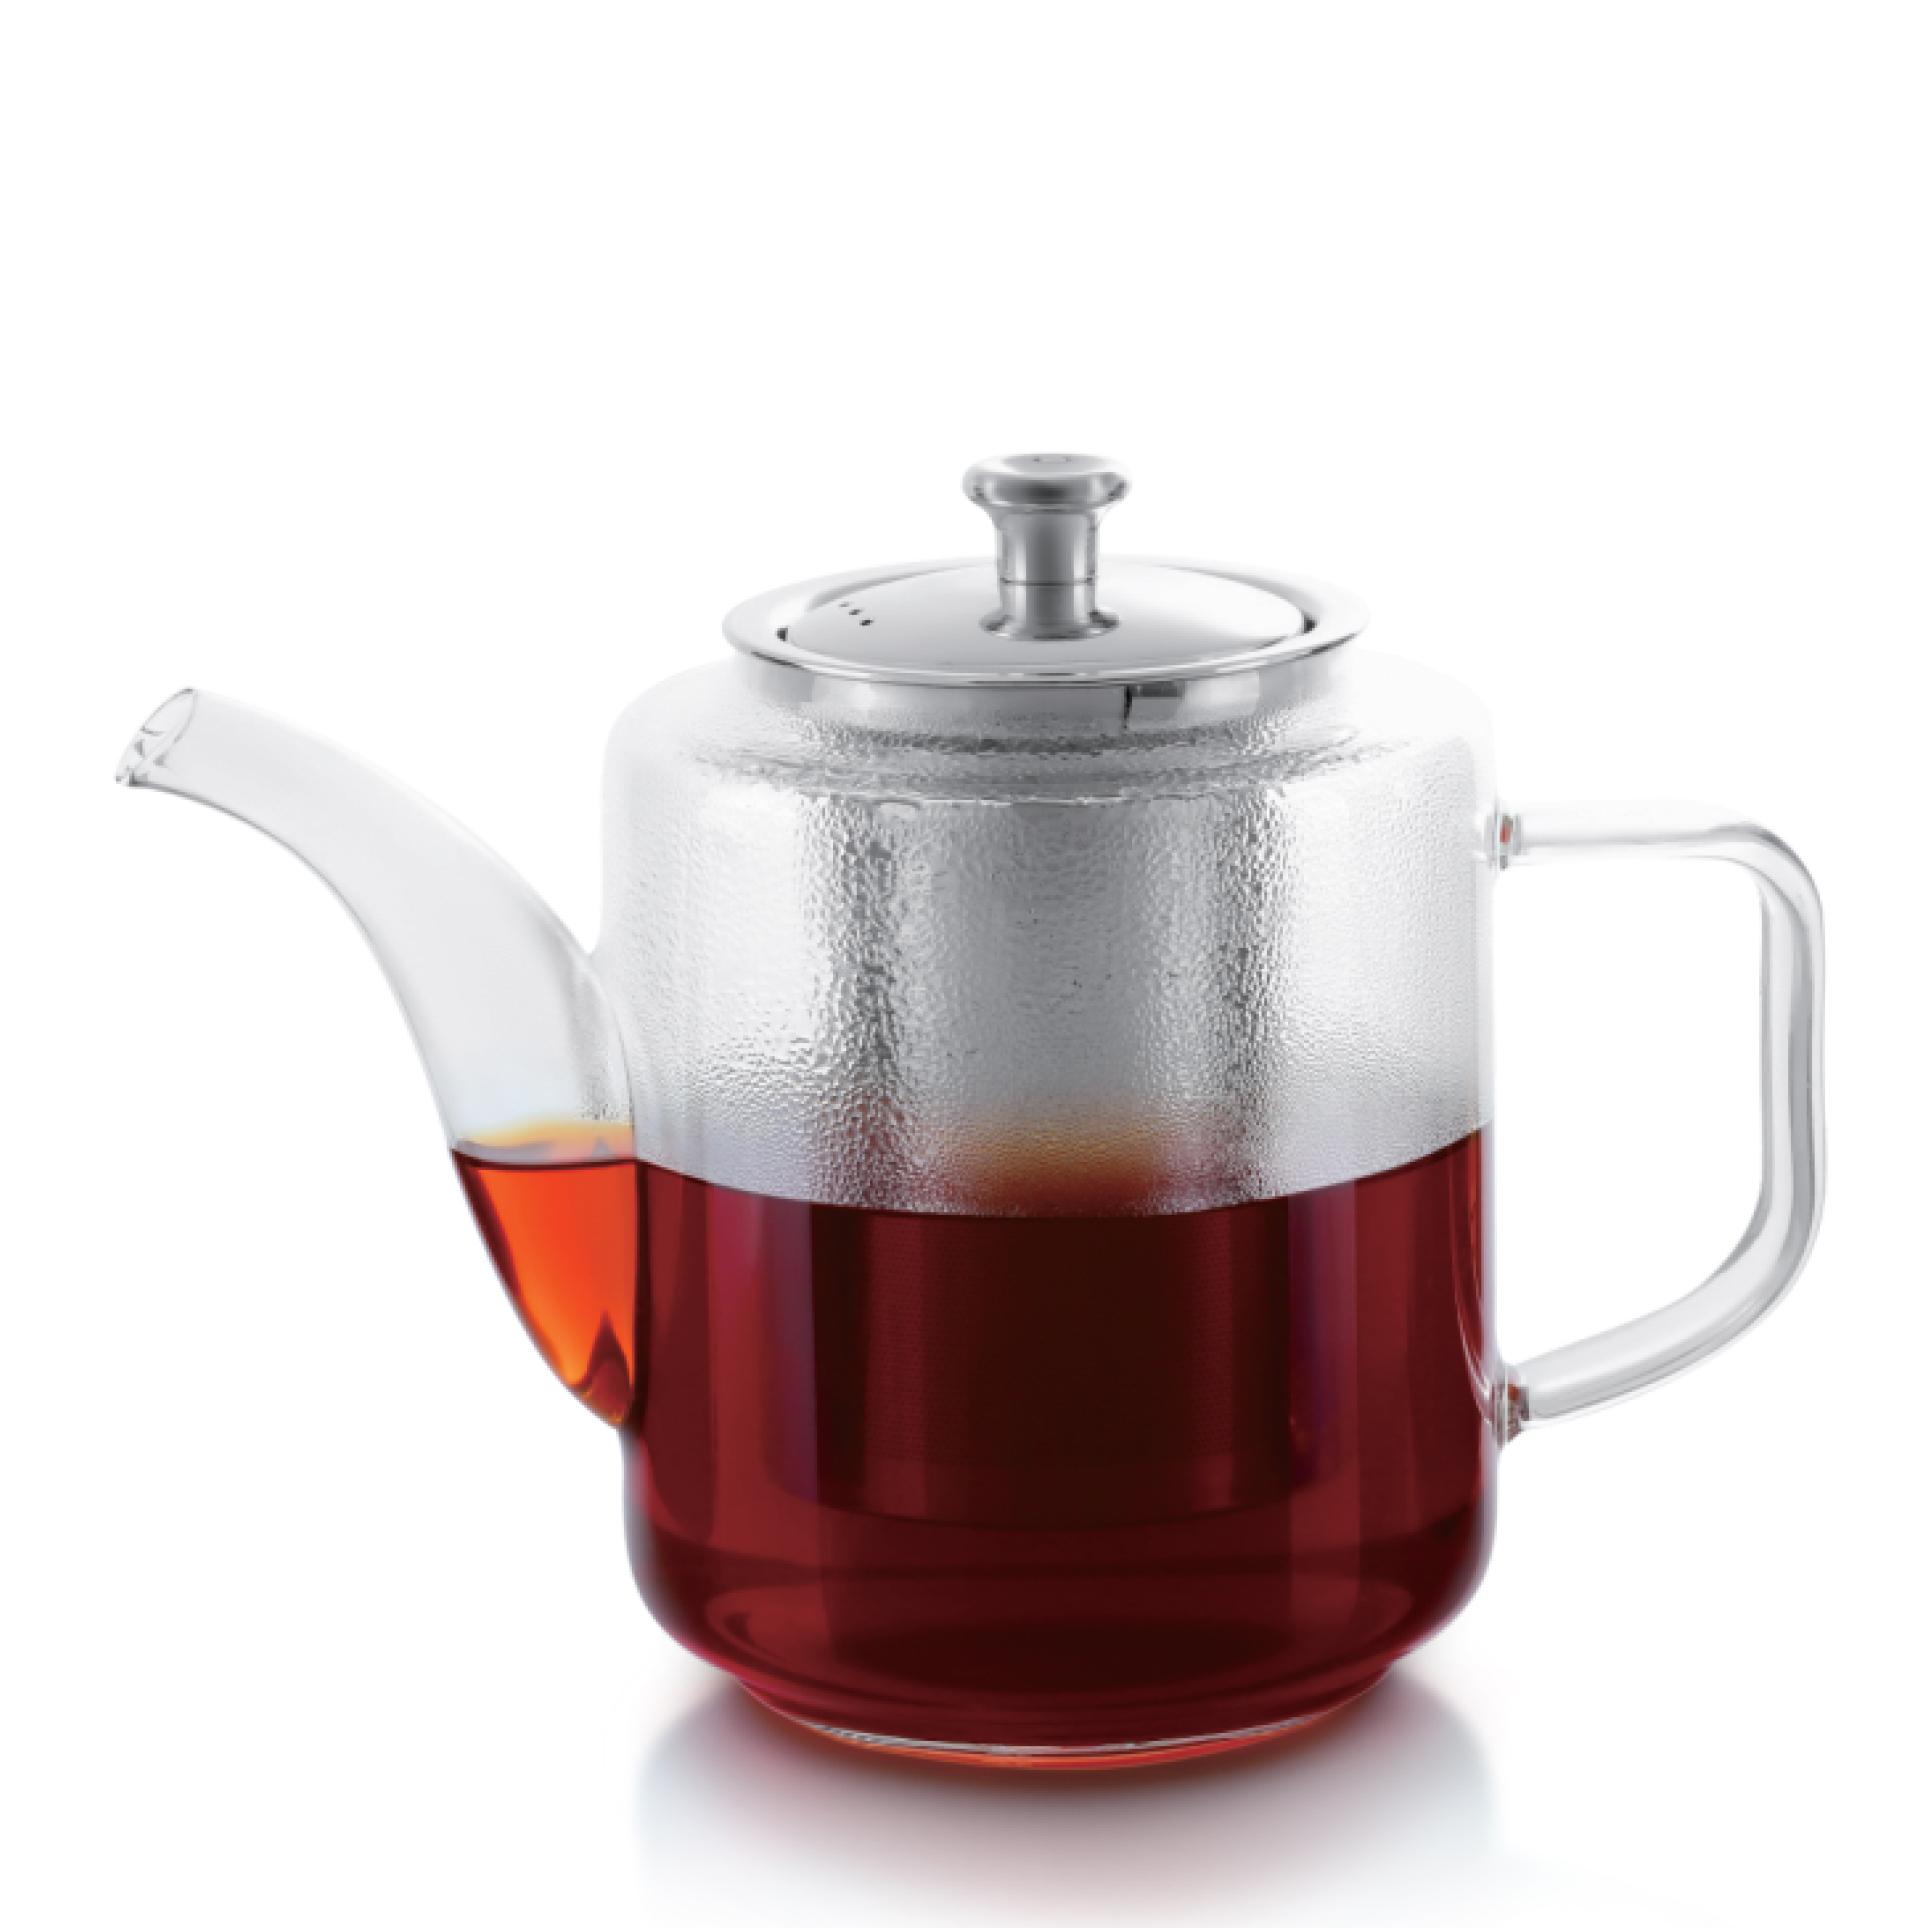 ابريق شاي زجاجي مع مصفاة (960Ml) Royalford Glass Tea Pot With Stainless Steel Strainer